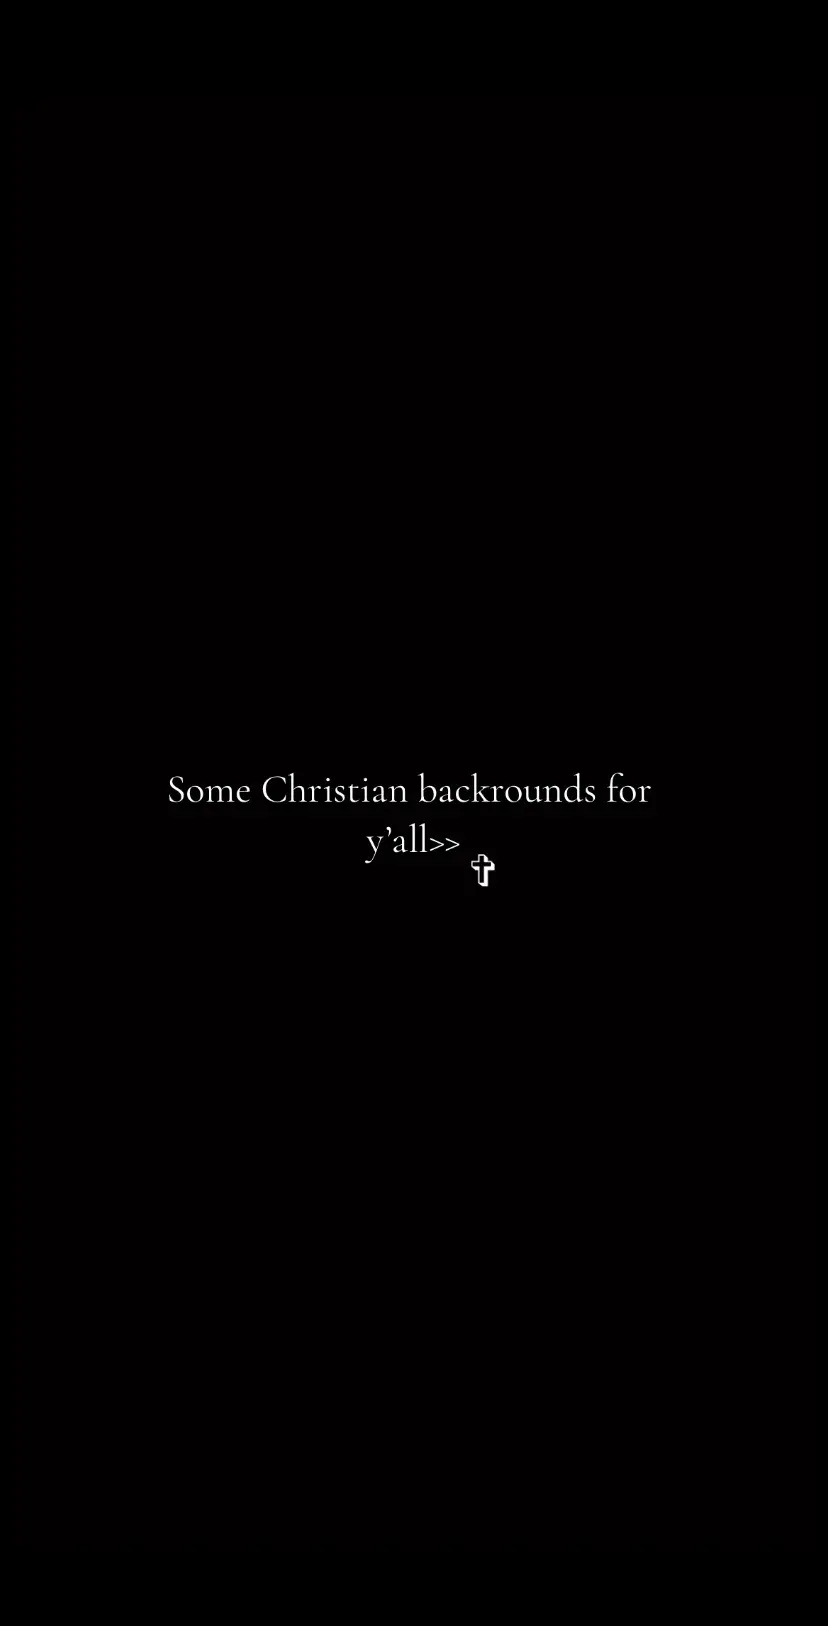 #fyp #amen #backrounds #christianbackrounds #foryou #christiantok #JesusChrist #bibleverse #pray #✝️